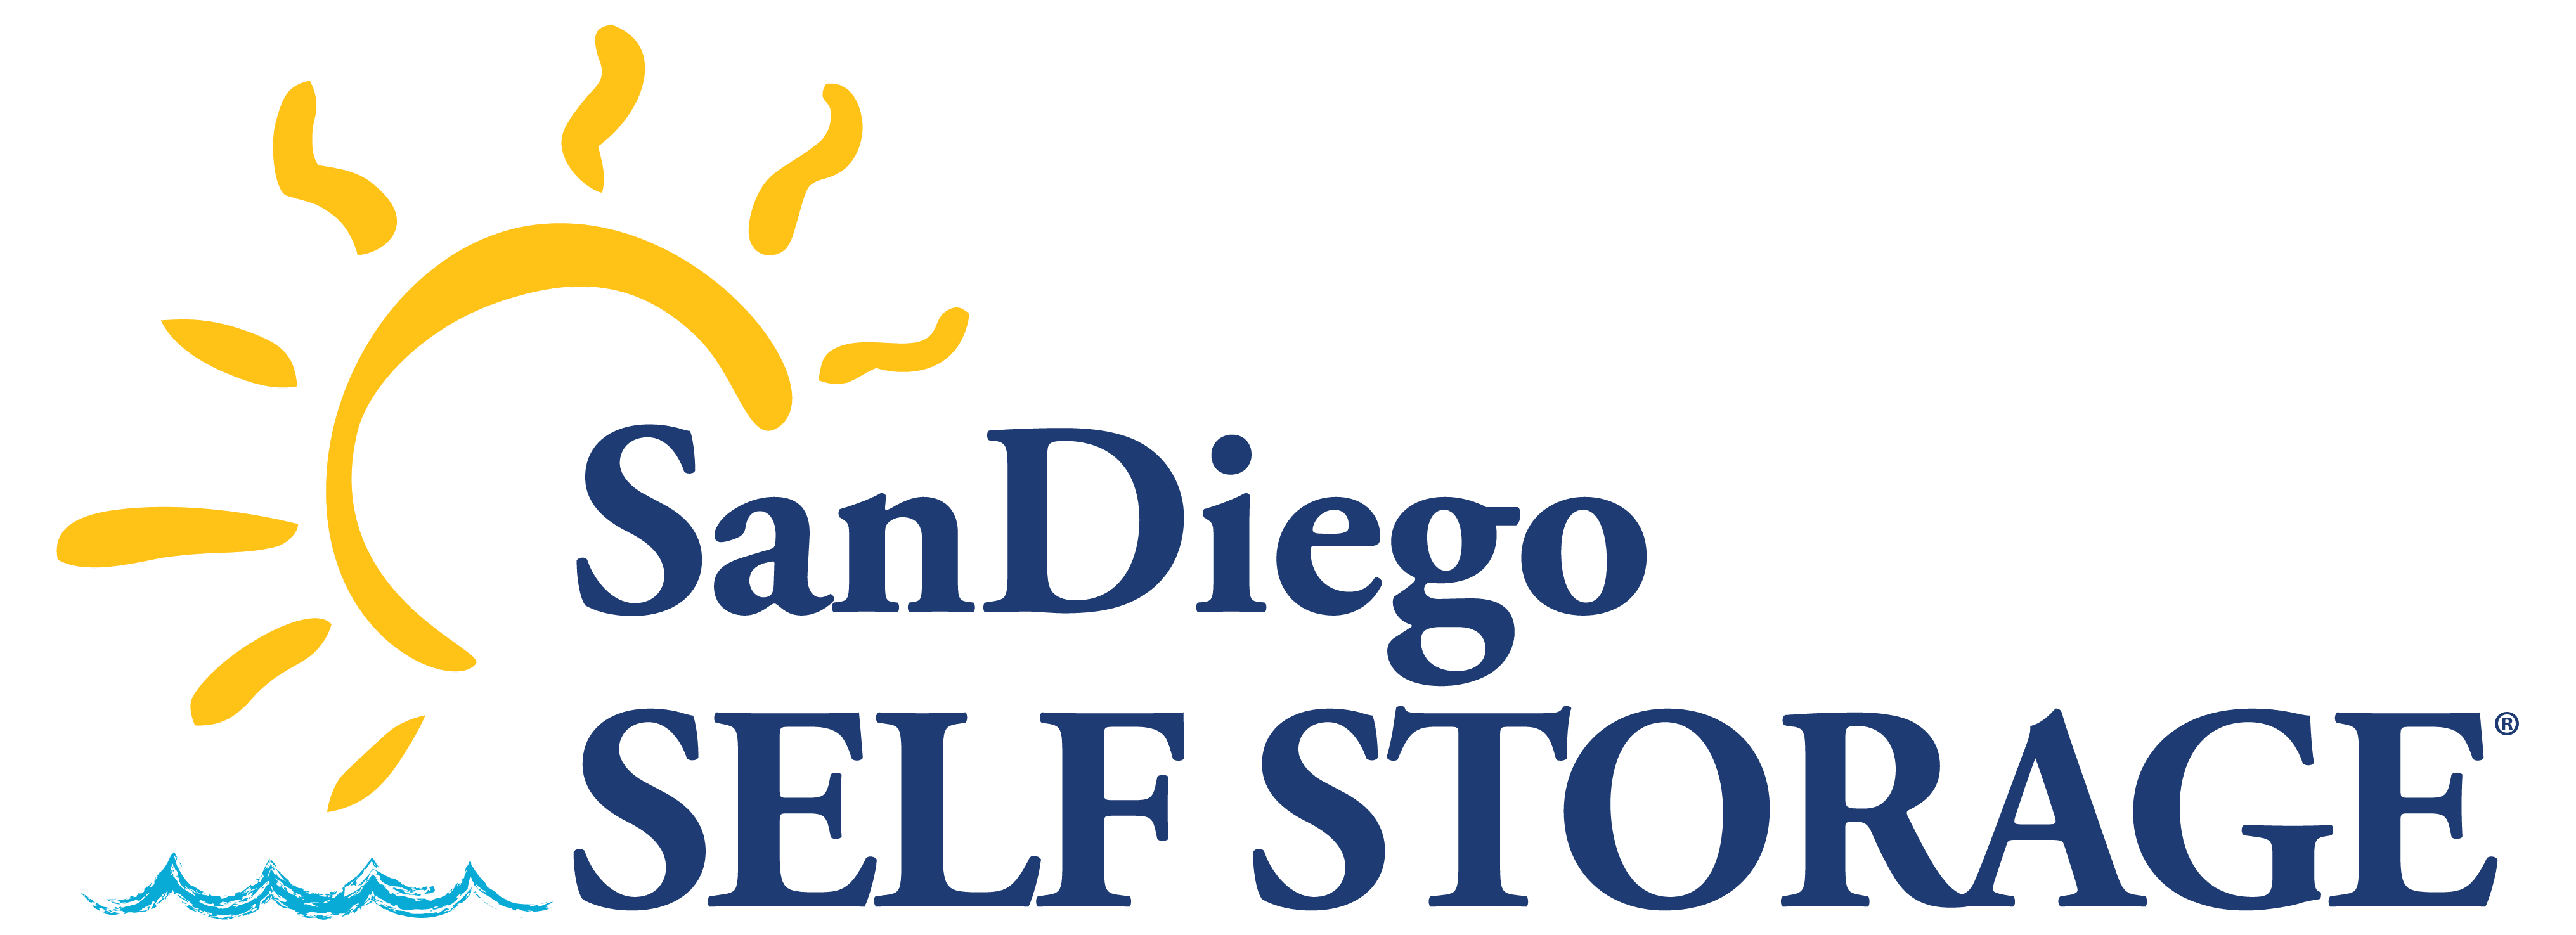 San Diego Self Storage